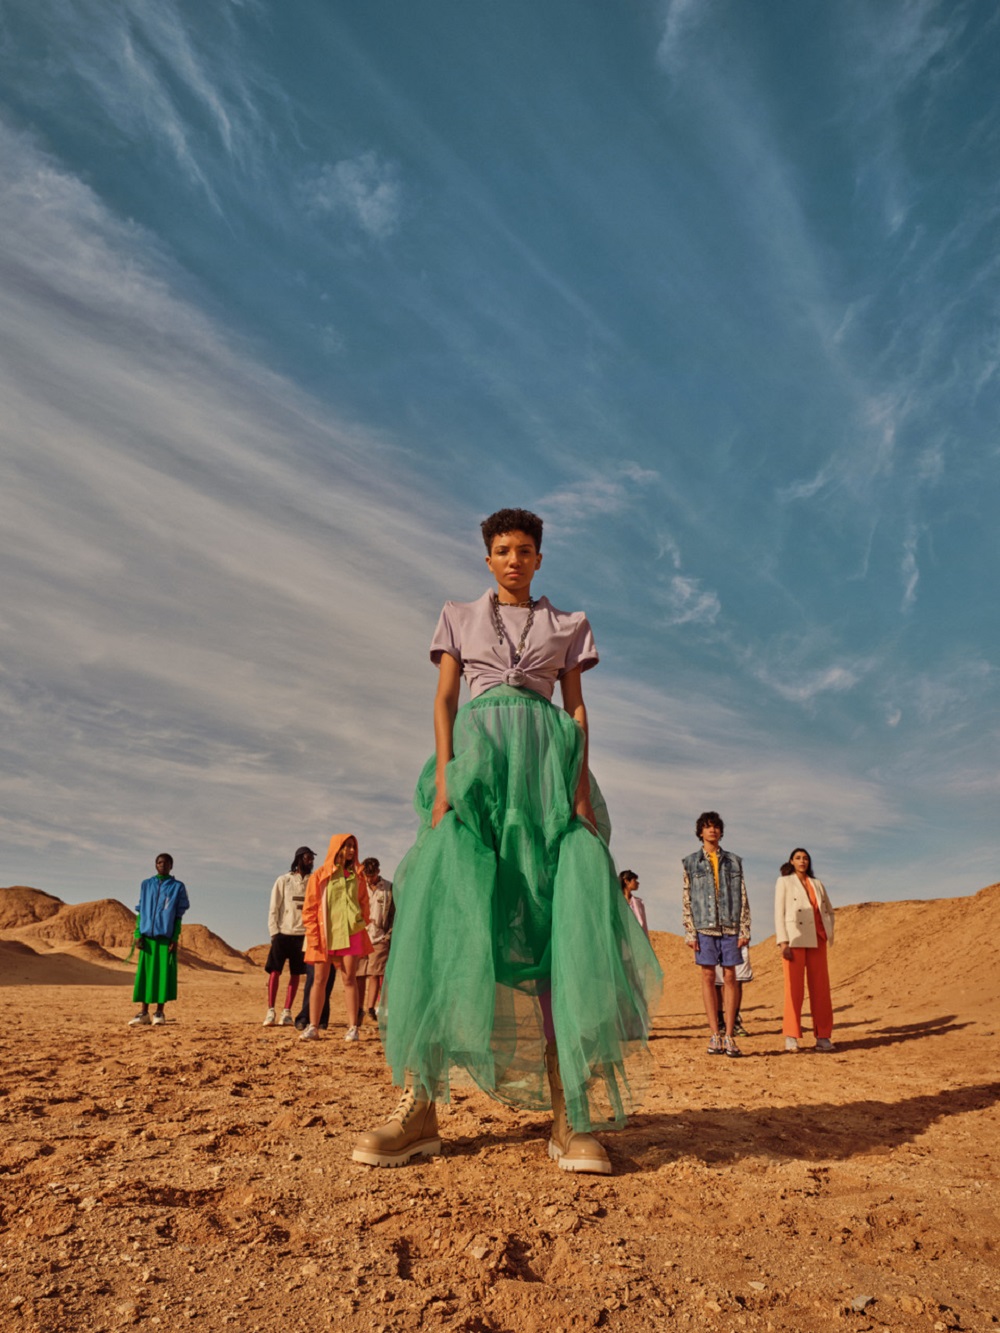 Prezentare de modă în deșert.